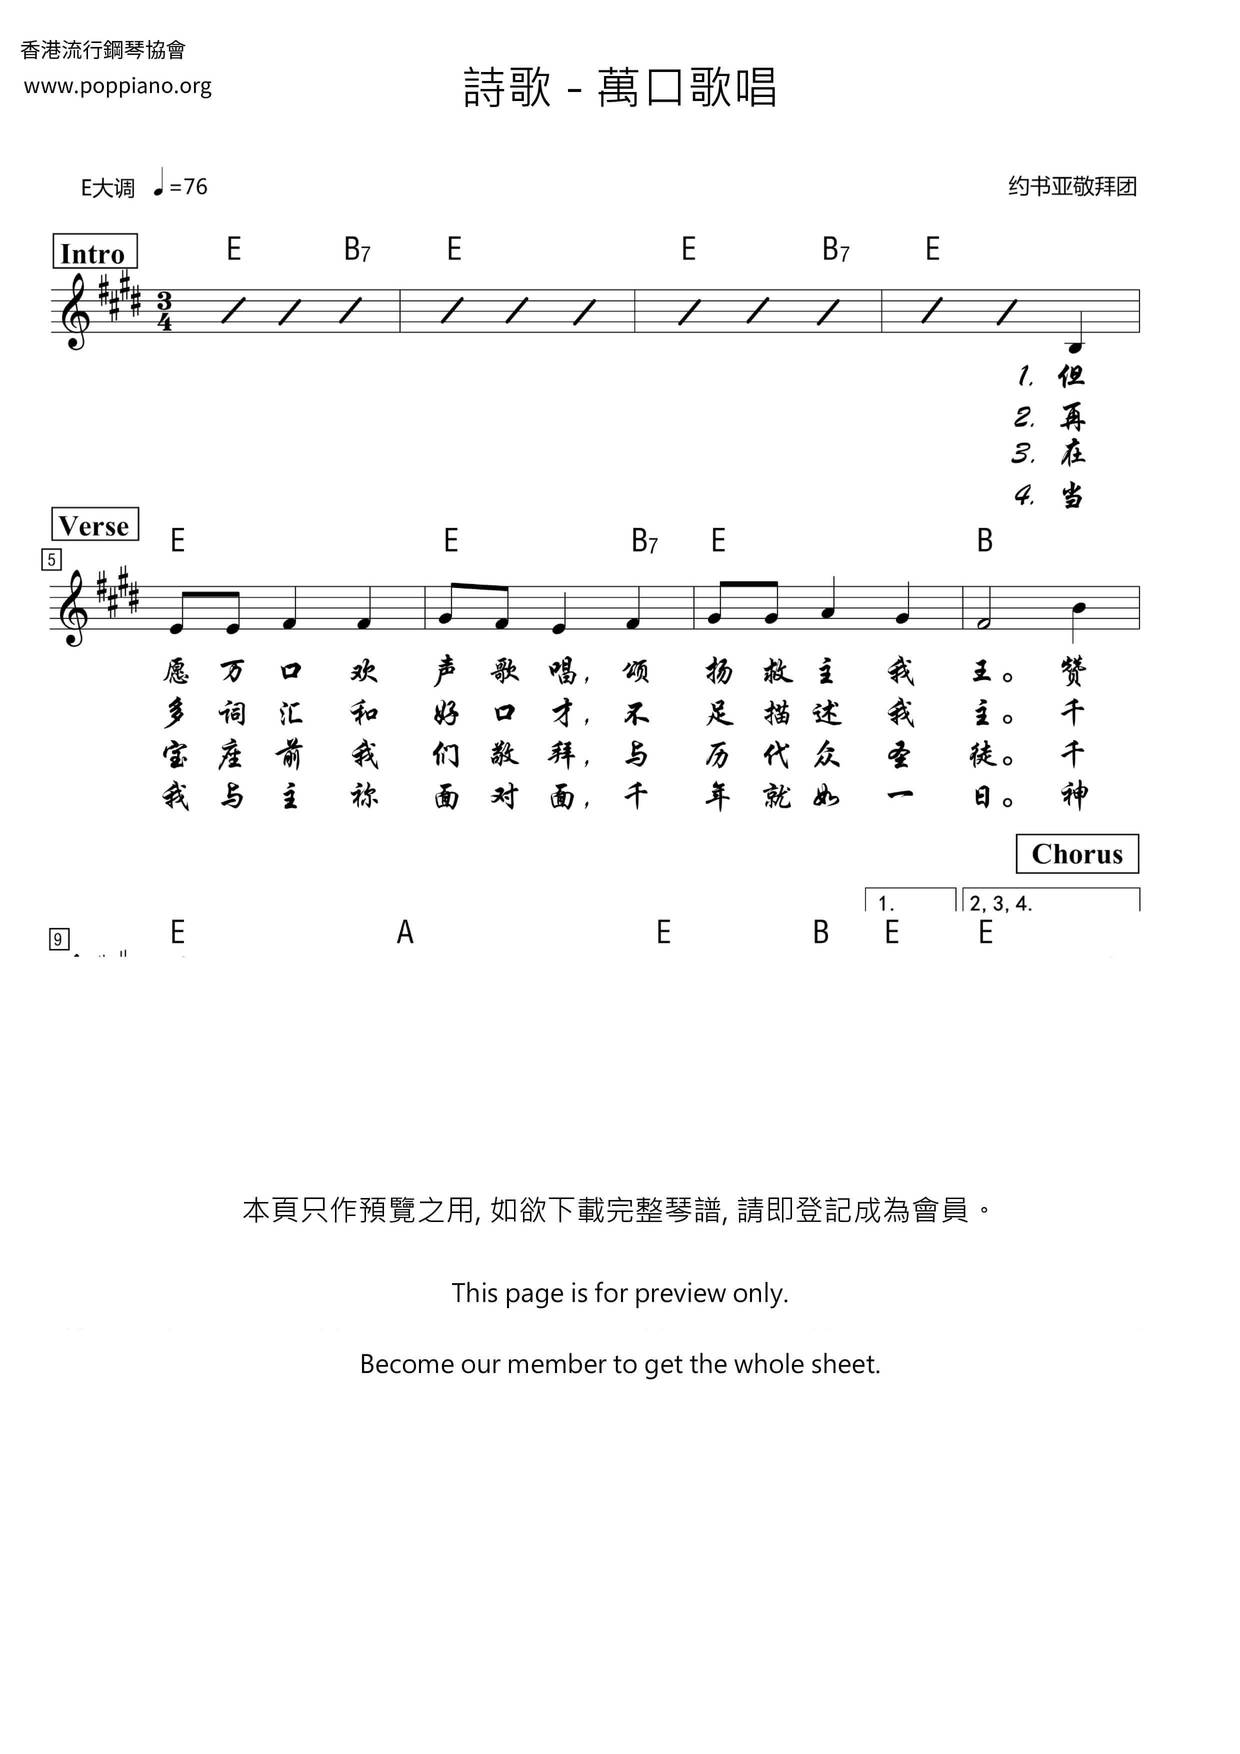 Wankou Singing Score